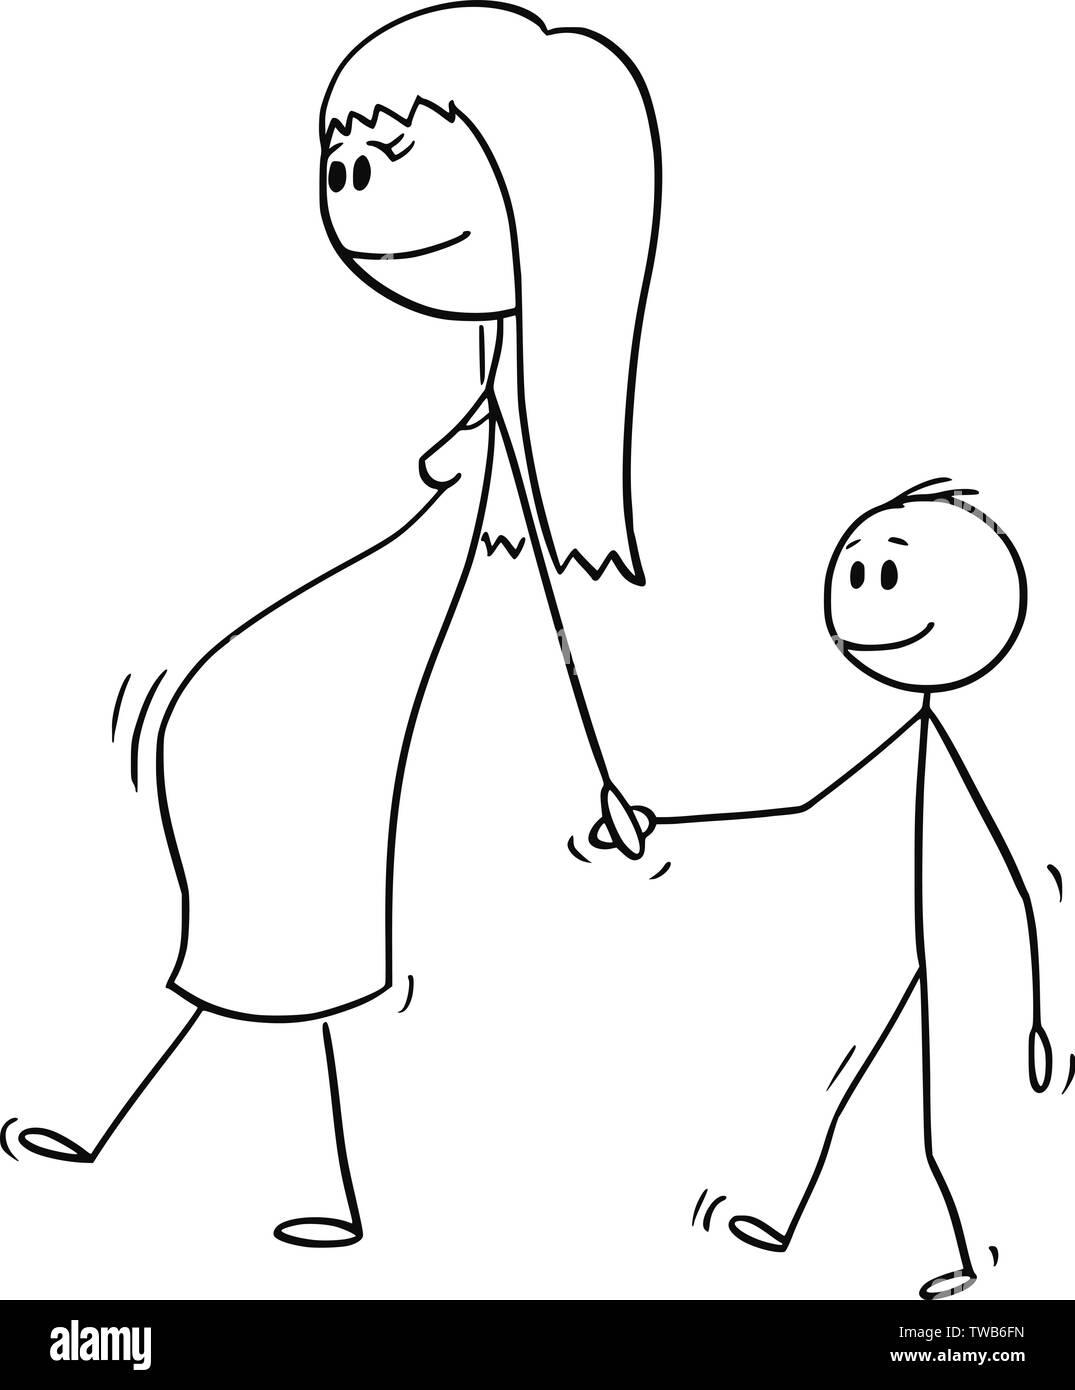 Vektor cartoon Strichmännchen Zeichnen konzeptionelle Darstellung der schwangeren Frau oder Mutter oder die Mutter zusammen mit kleinen Jungen oder Sohn. Sie sind zu Fuß und halten sich an den Händen. Stock Vektor